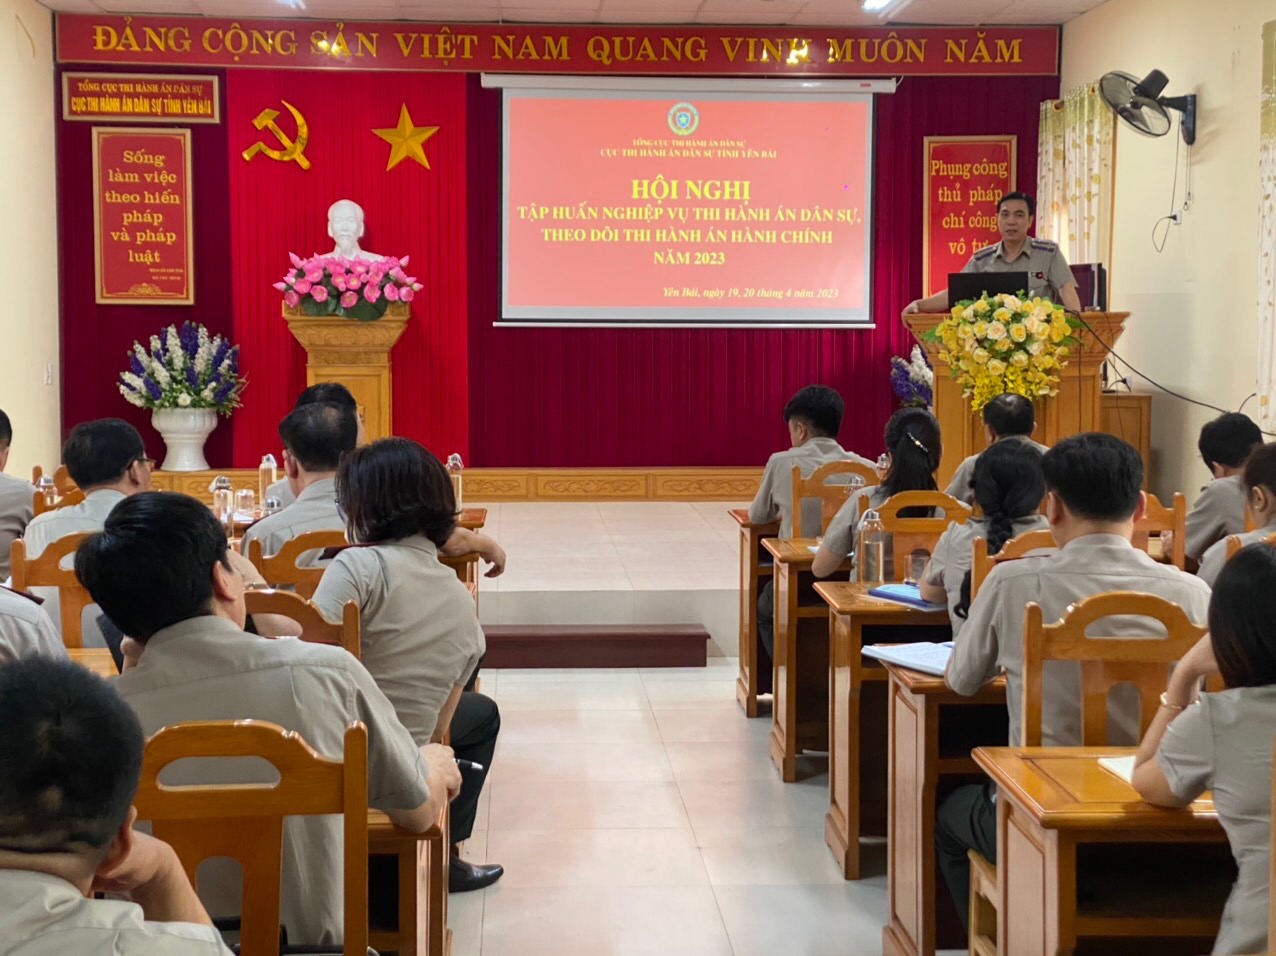 Cục Thi hành án dân sự tỉnh Yên Bái tổ chức Hội nghị tập huấn nghiệp vụ công tác thi hành án dân sự, theo dõi thi hành án hành chính năm 2023